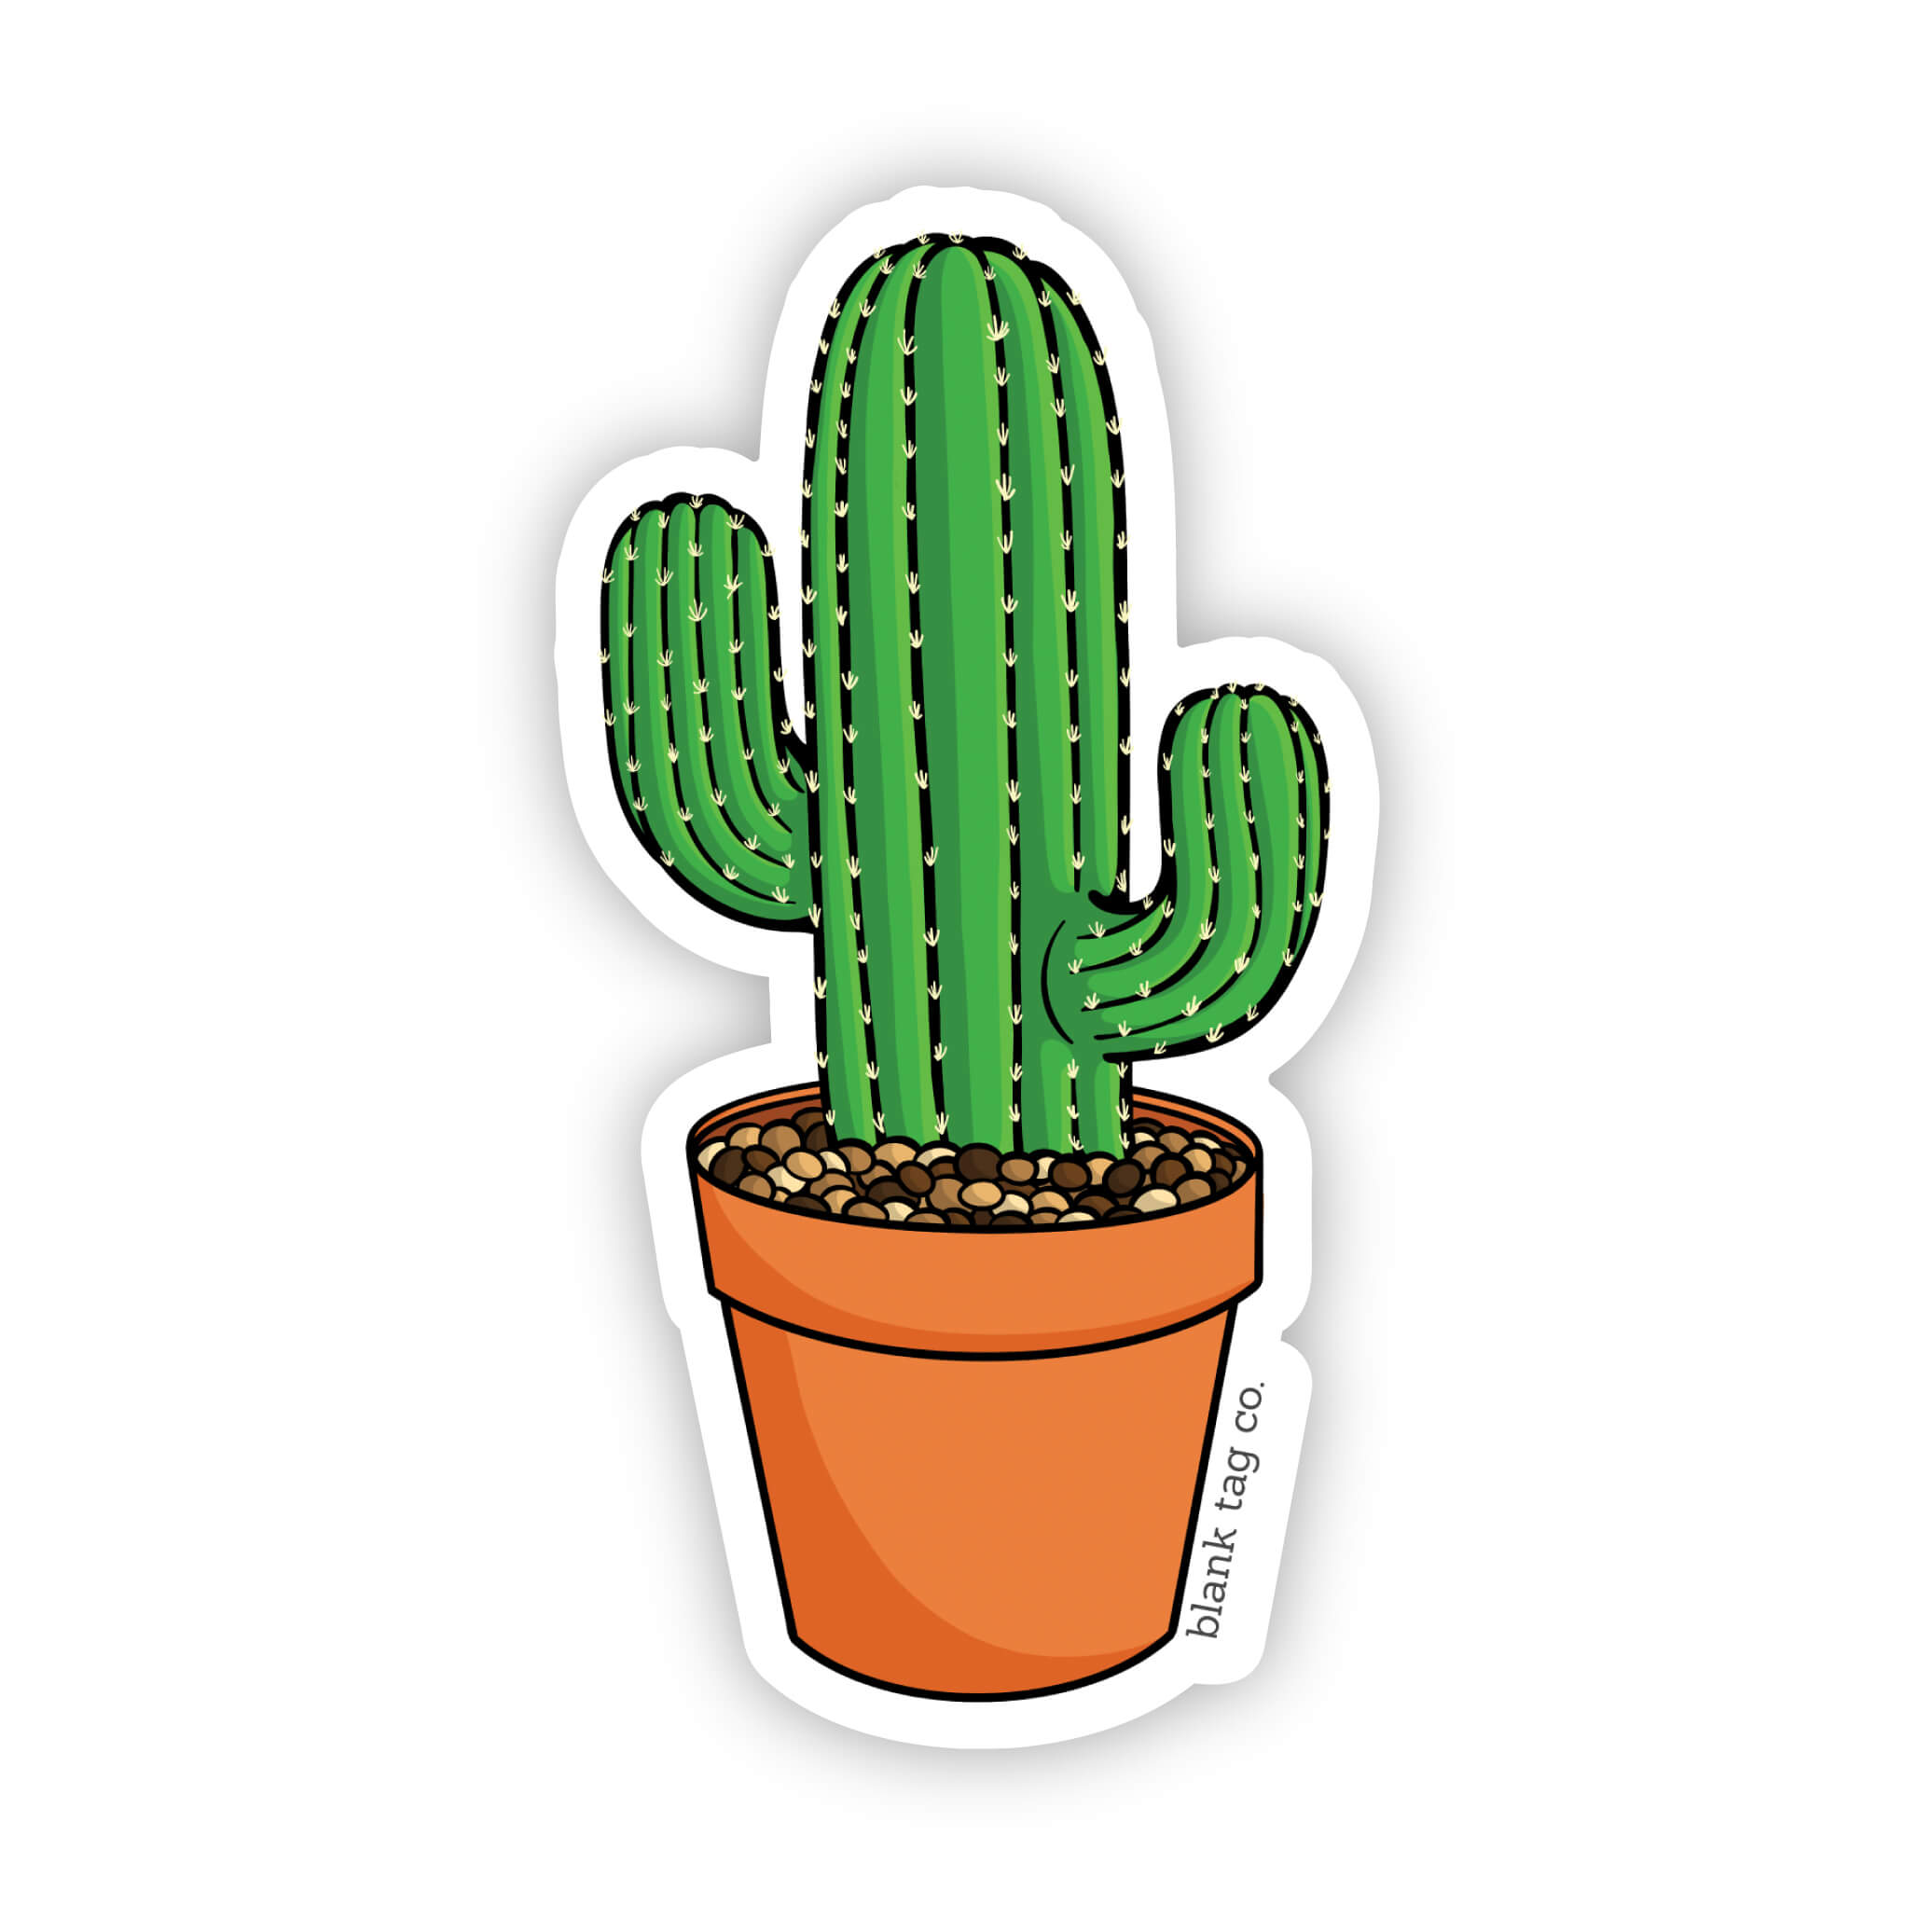 The Round Mini Cactus Sticker